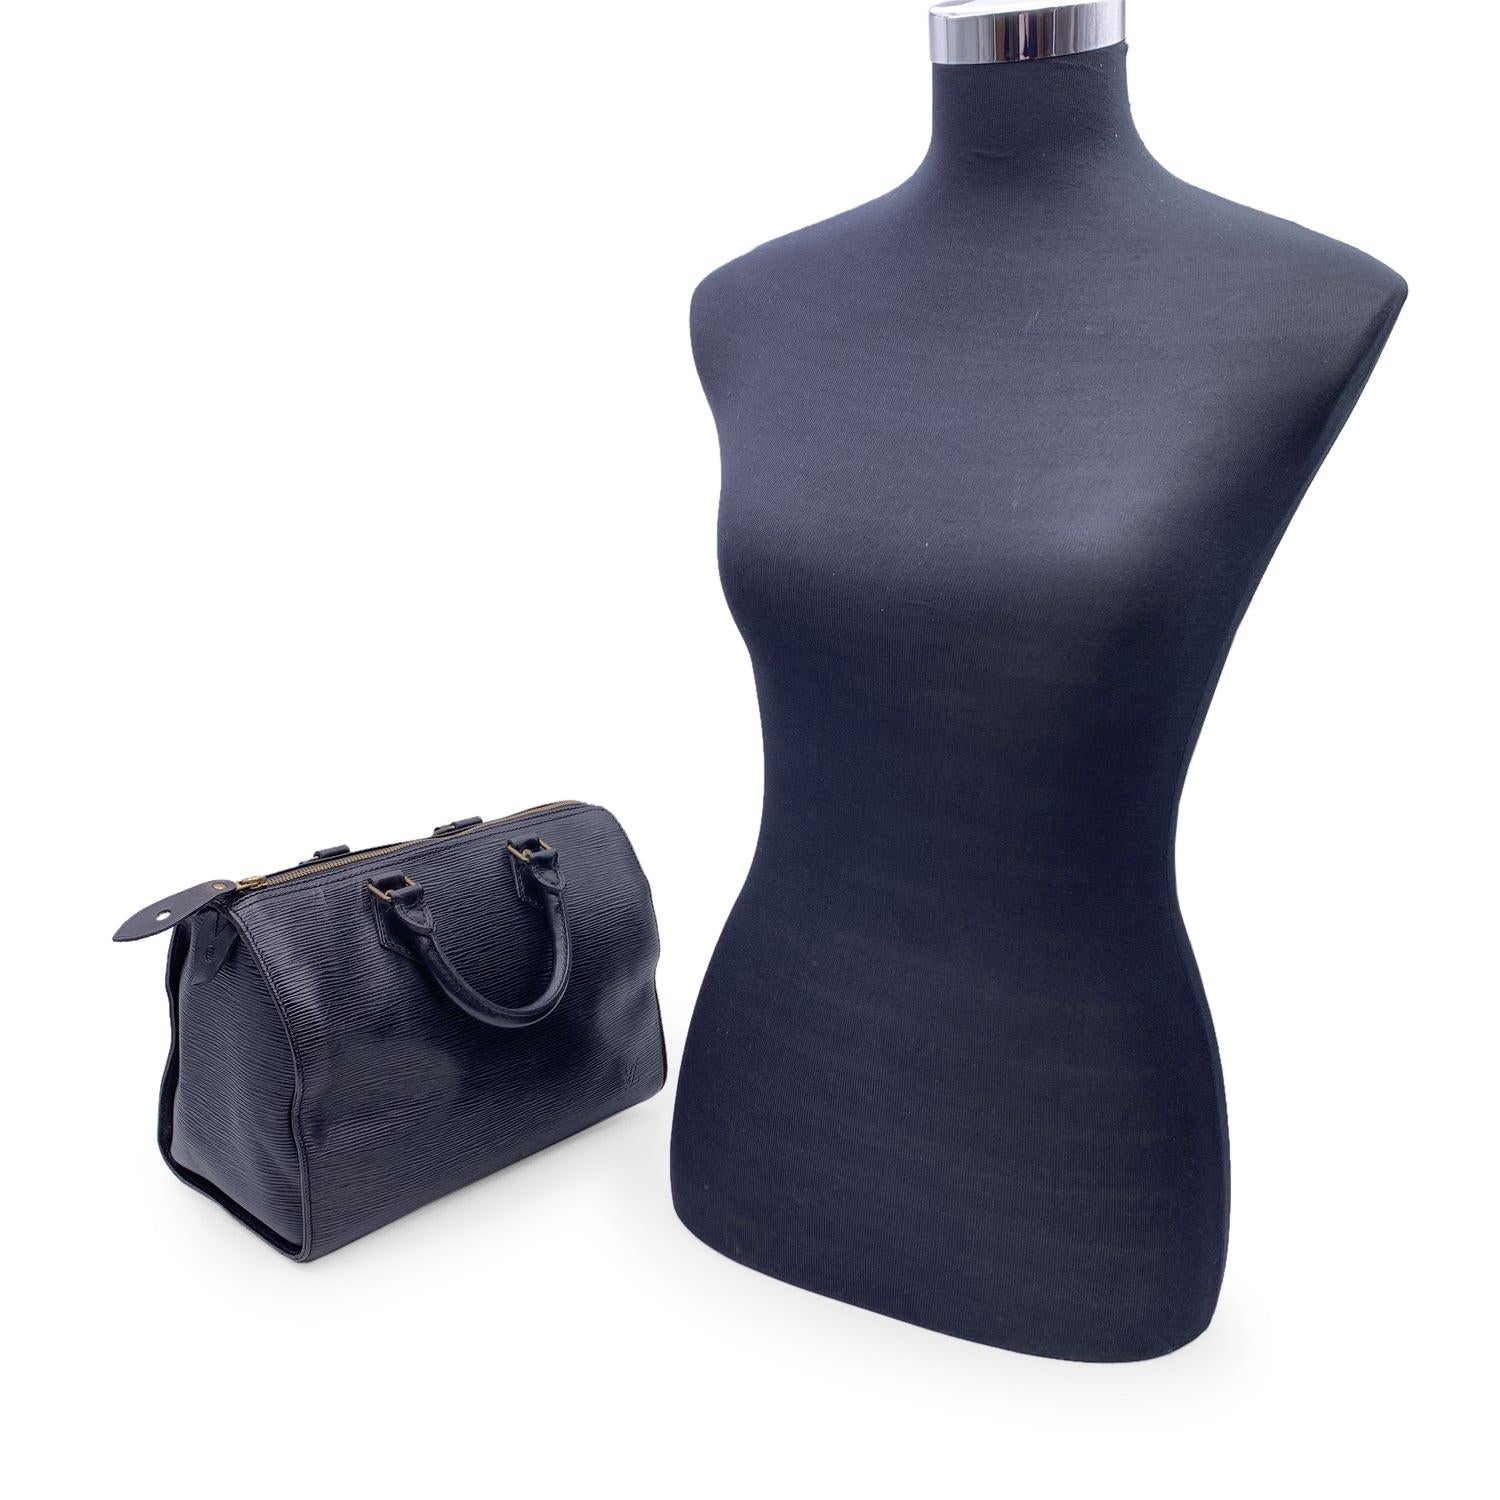 Ce classique Louis Vuitton Speedy 28, l'une des lignes les plus populaires, est en cuir épi noir. Forme arrondie, double poignée en cuir. Doublure en daim noir. Matériel en métal doré. Fermeture à glissière sur le dessus. 1 poche ouverte à